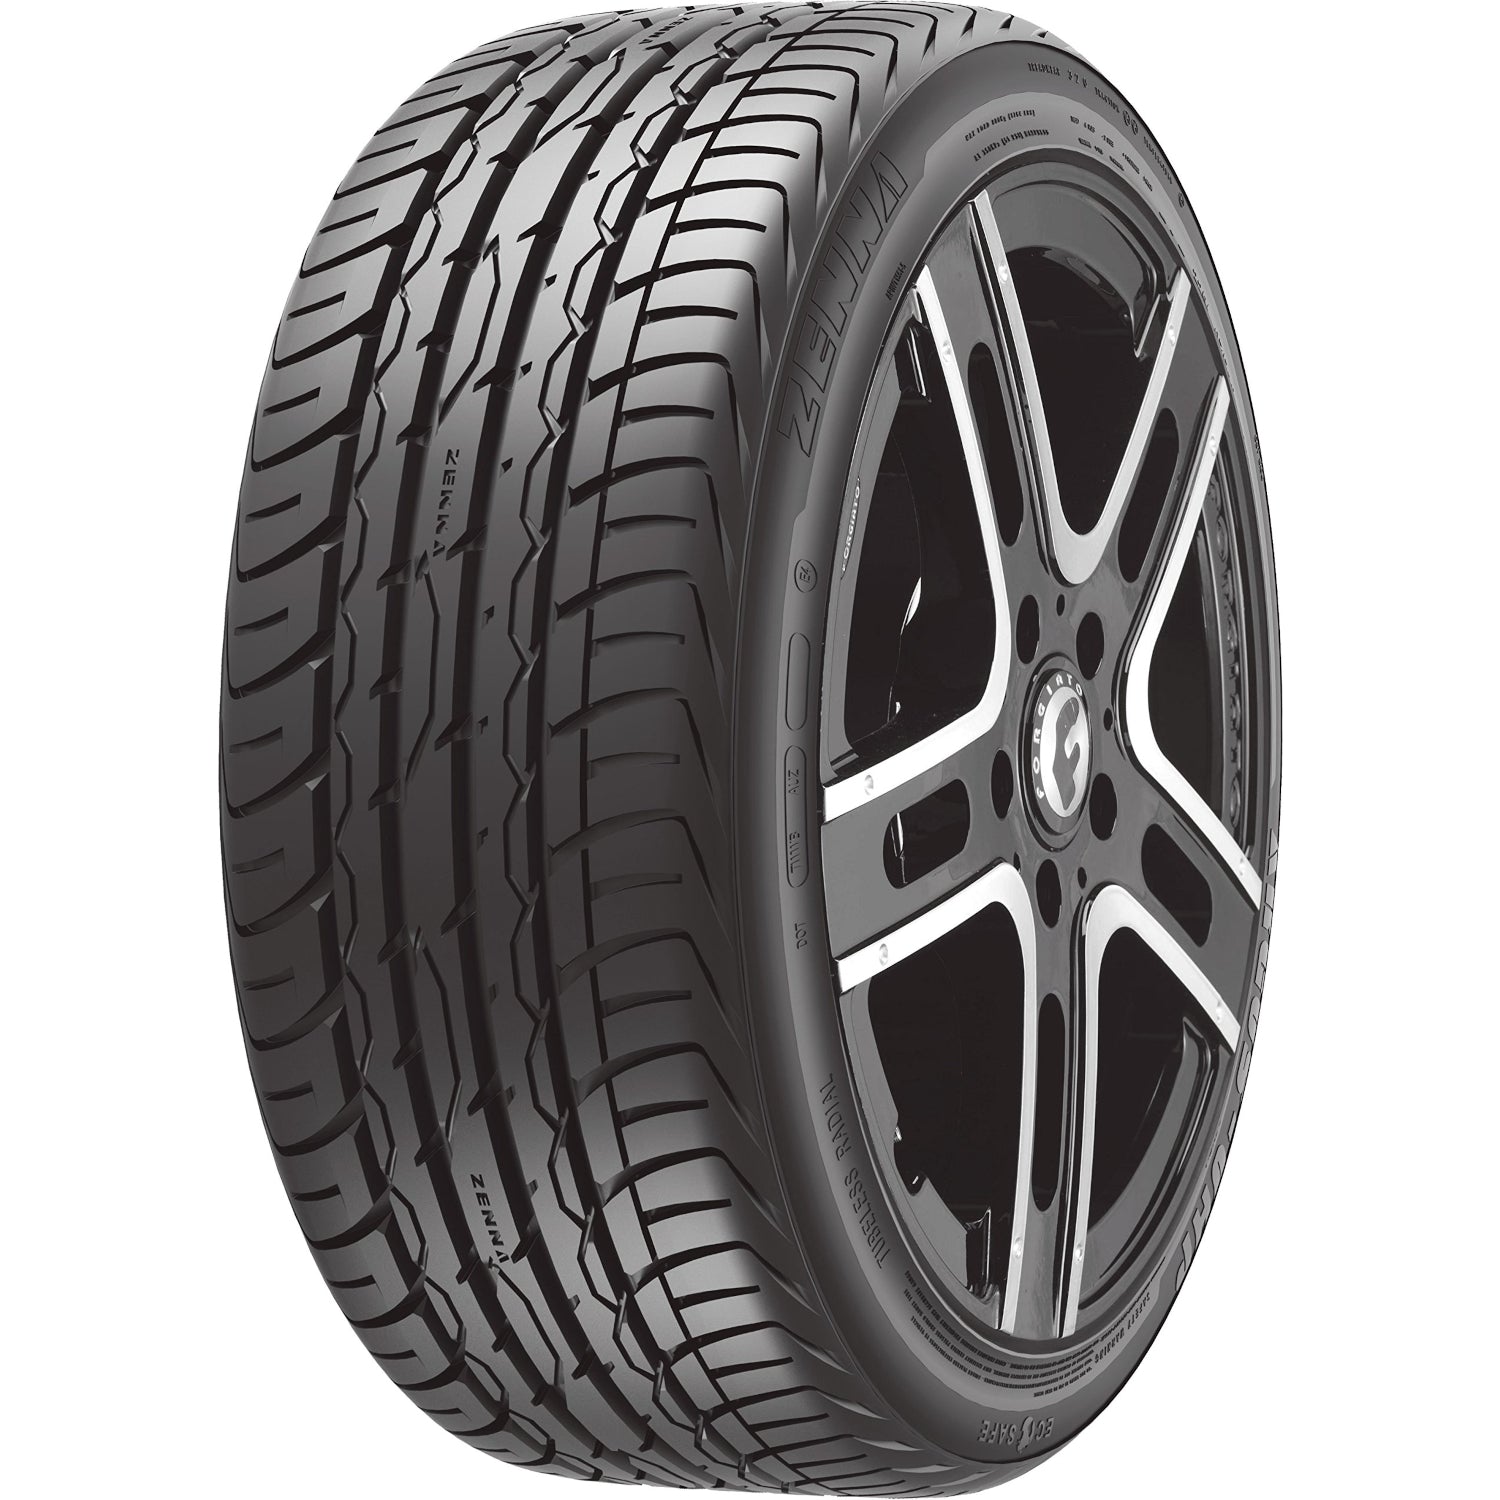 Zenna Argus UHP 275/25ZR24 (29.5x10.8R 24) Tires